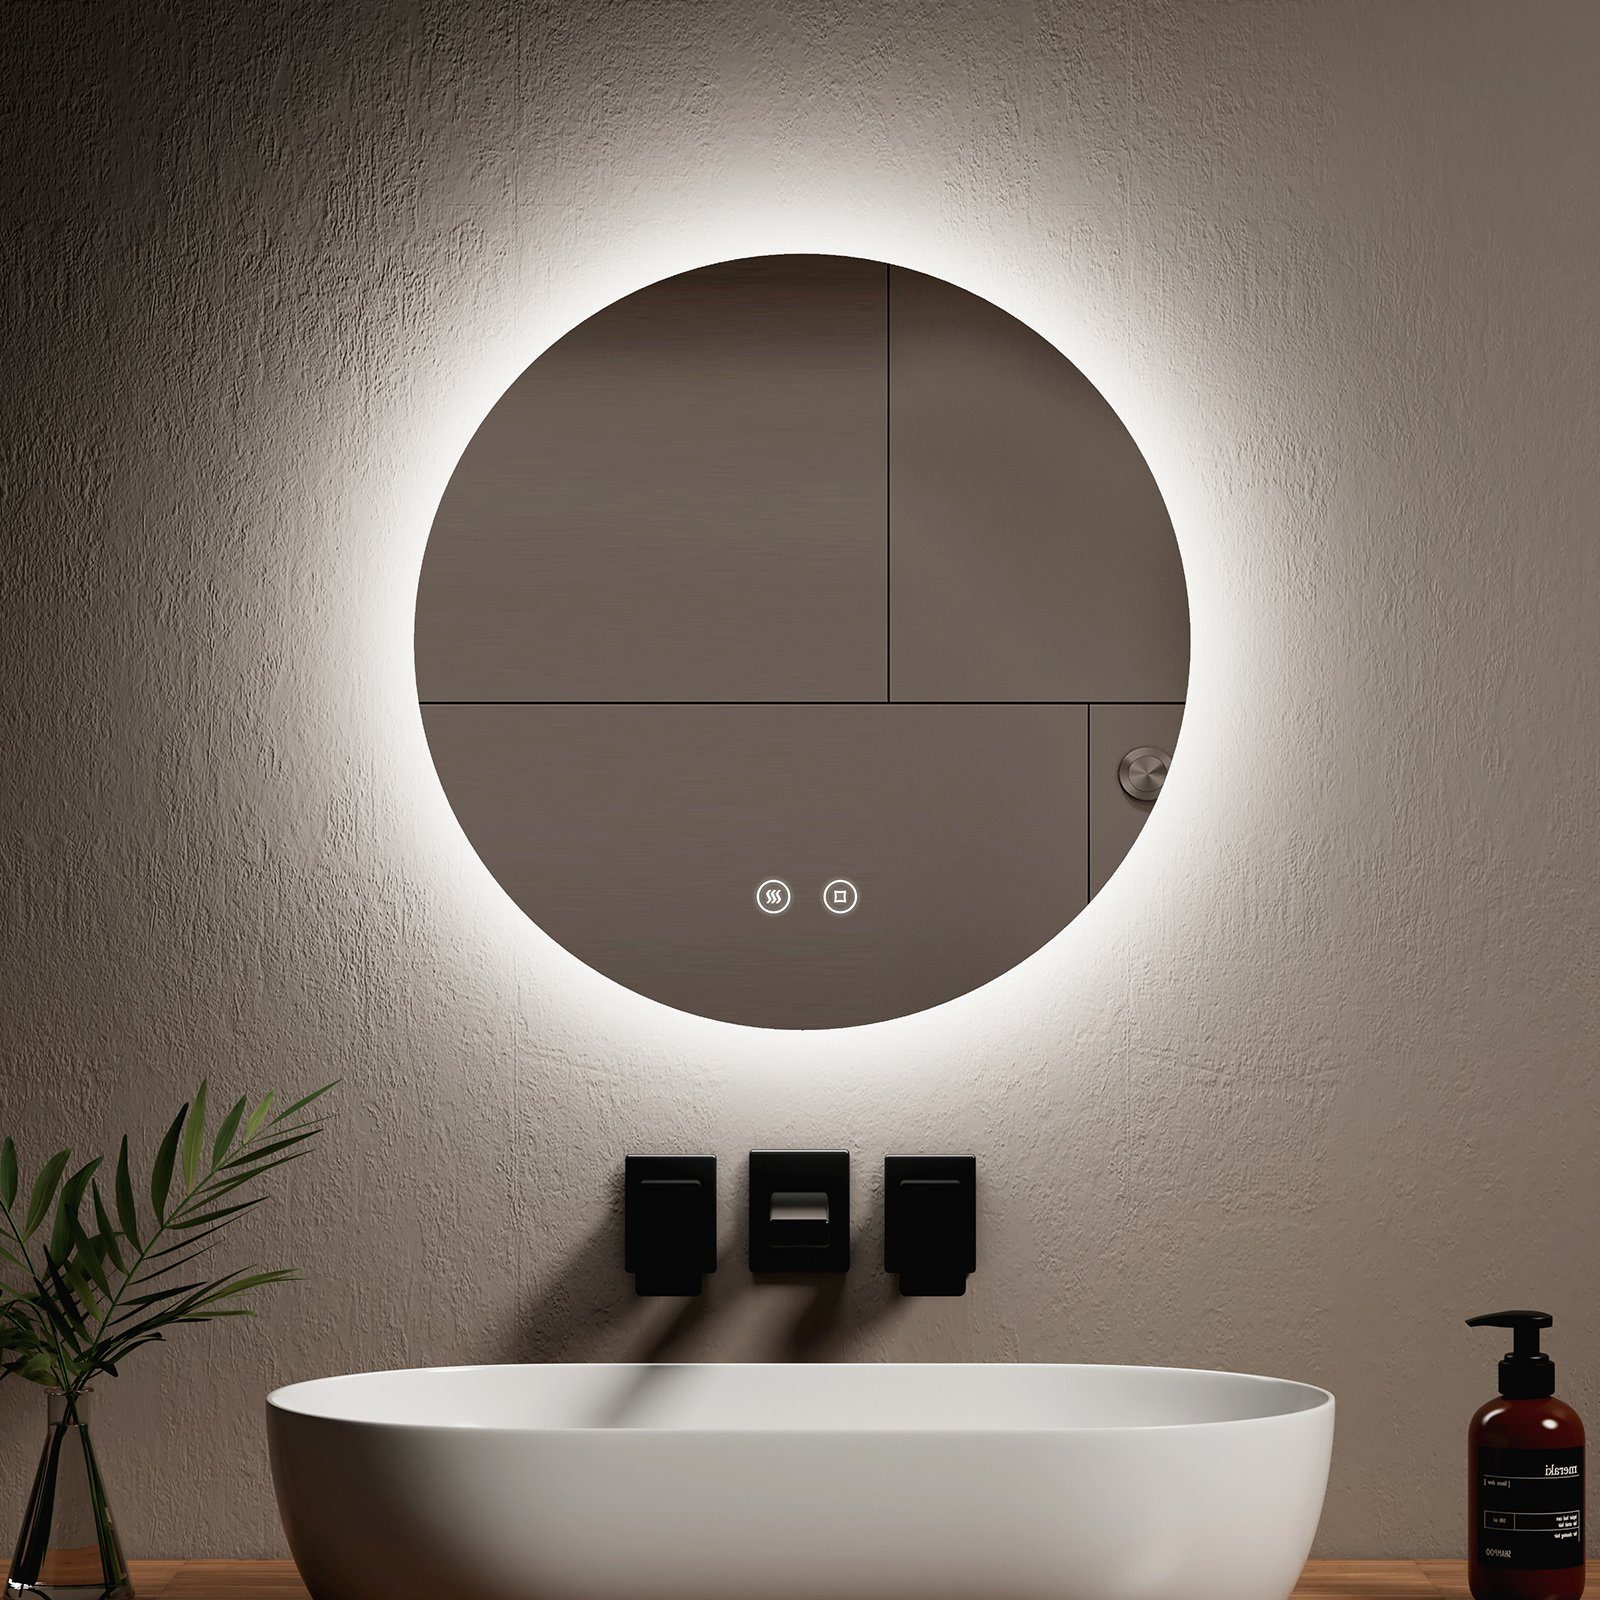 EMKE Badspiegel Antibeschlage Badezimmerspiegel mit Beleuchtung 6500K Lichtspiegel, Energiesparend Helligkeit Einstellbar, Memory-Funktion,IP44,Φ 50-70 cm